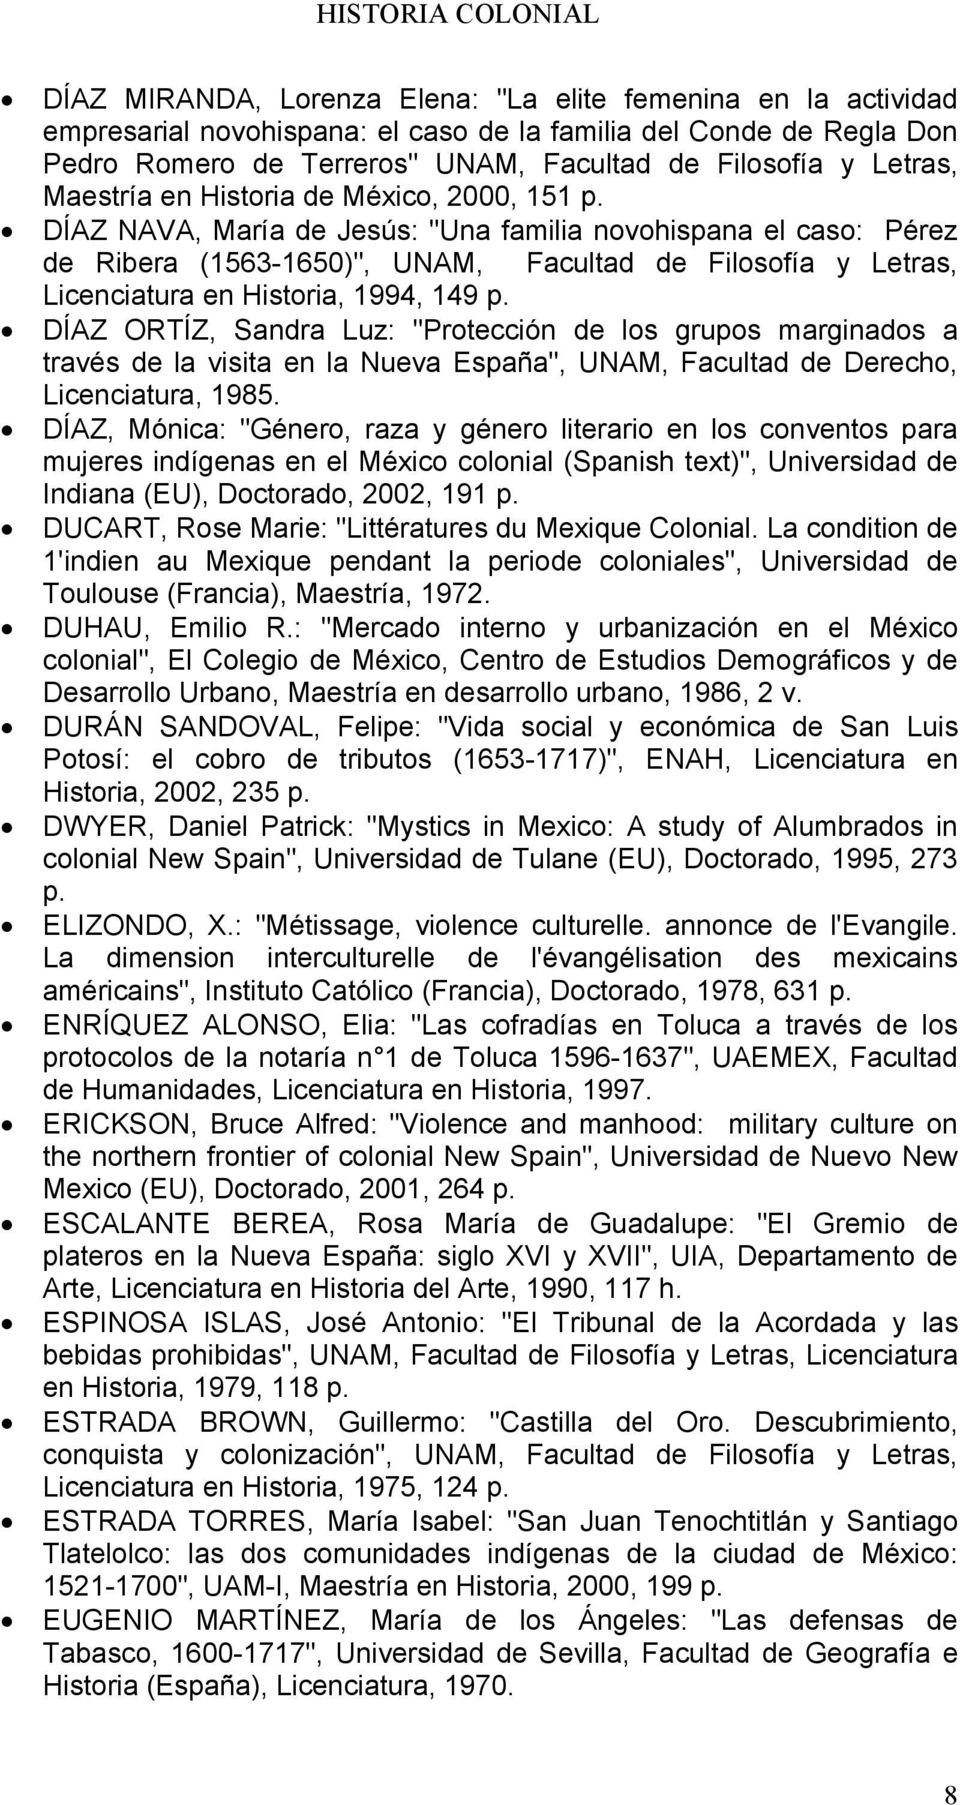 DÍAZ NAVA, María de Jesús: "Una familia novohispana el caso: Pérez de Ribera (1563-1650)", UNAM, Facultad de Filosofía y Letras, Licenciatura en Historia, 1994, 149 p.